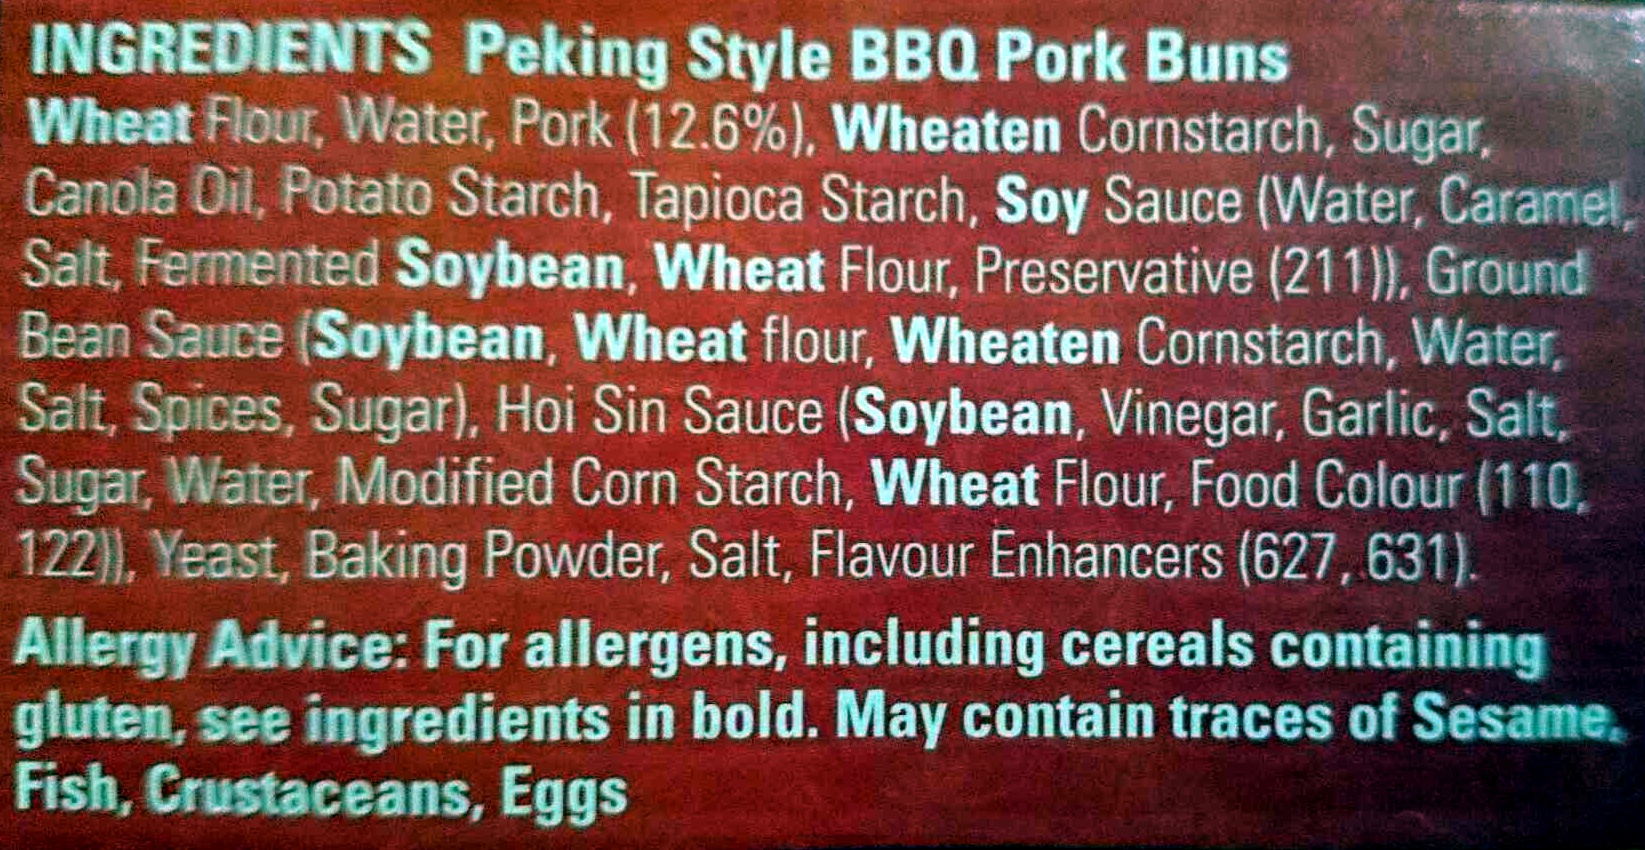 Peking Style BBQ Pork Buns - Ingredients